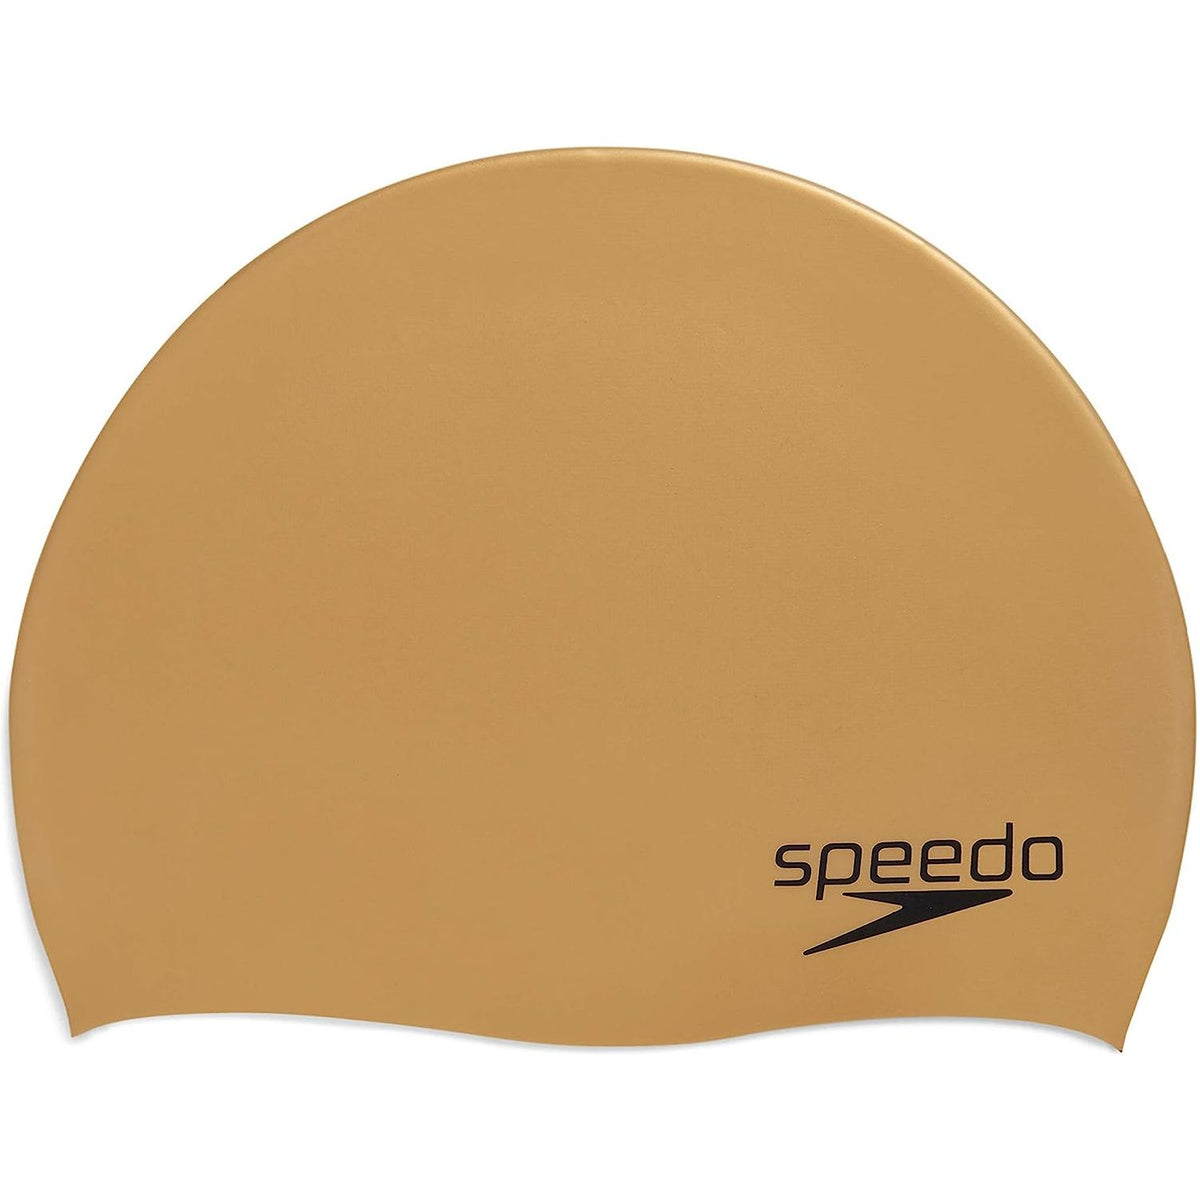 Speedo Elastomeric Solid Silicone Swim Cap